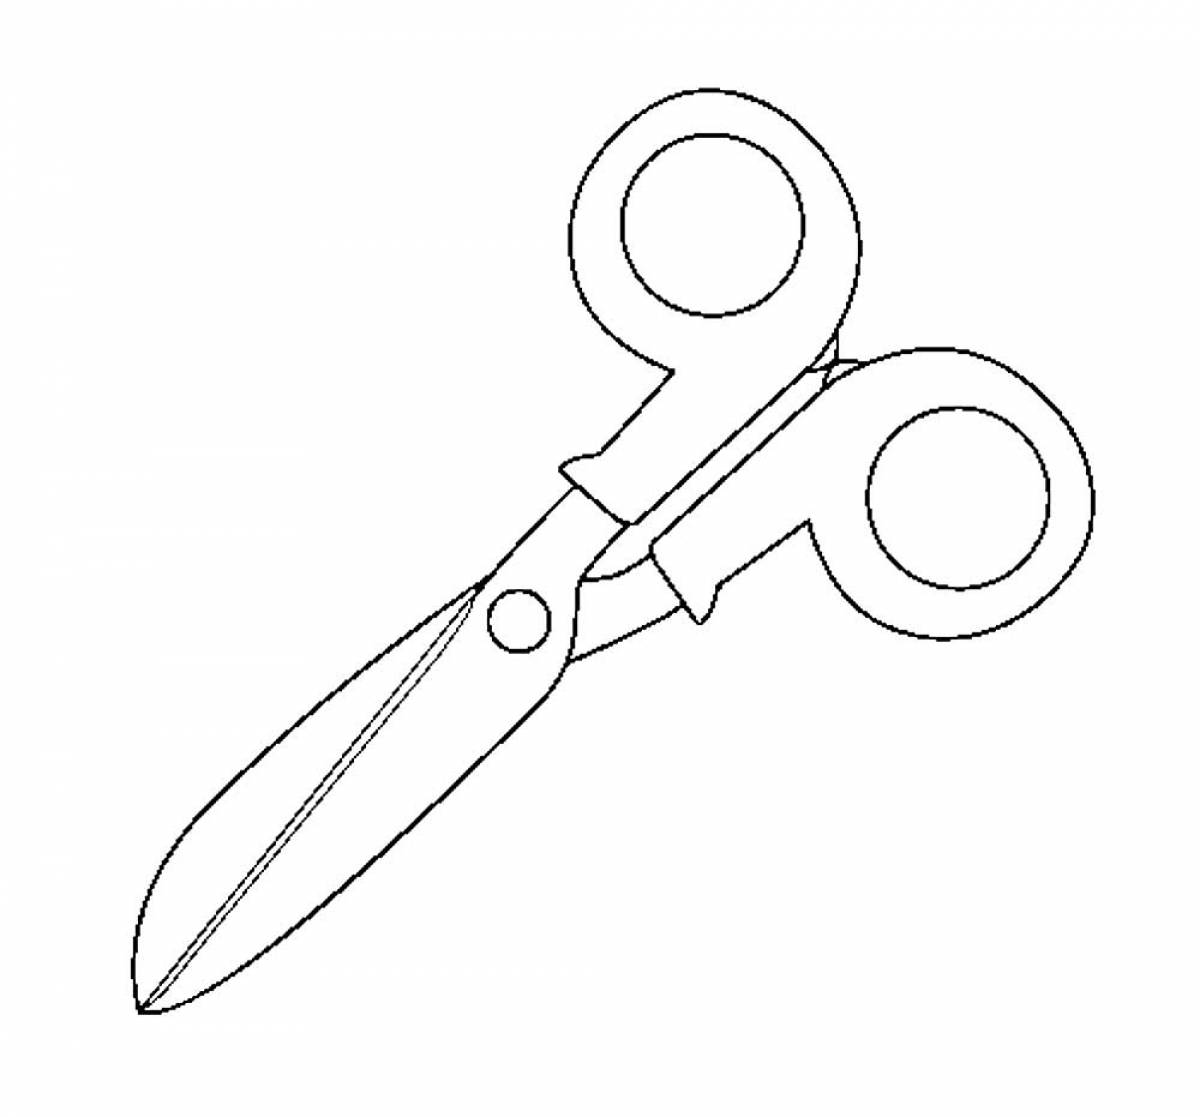 Photo Scissors with handles